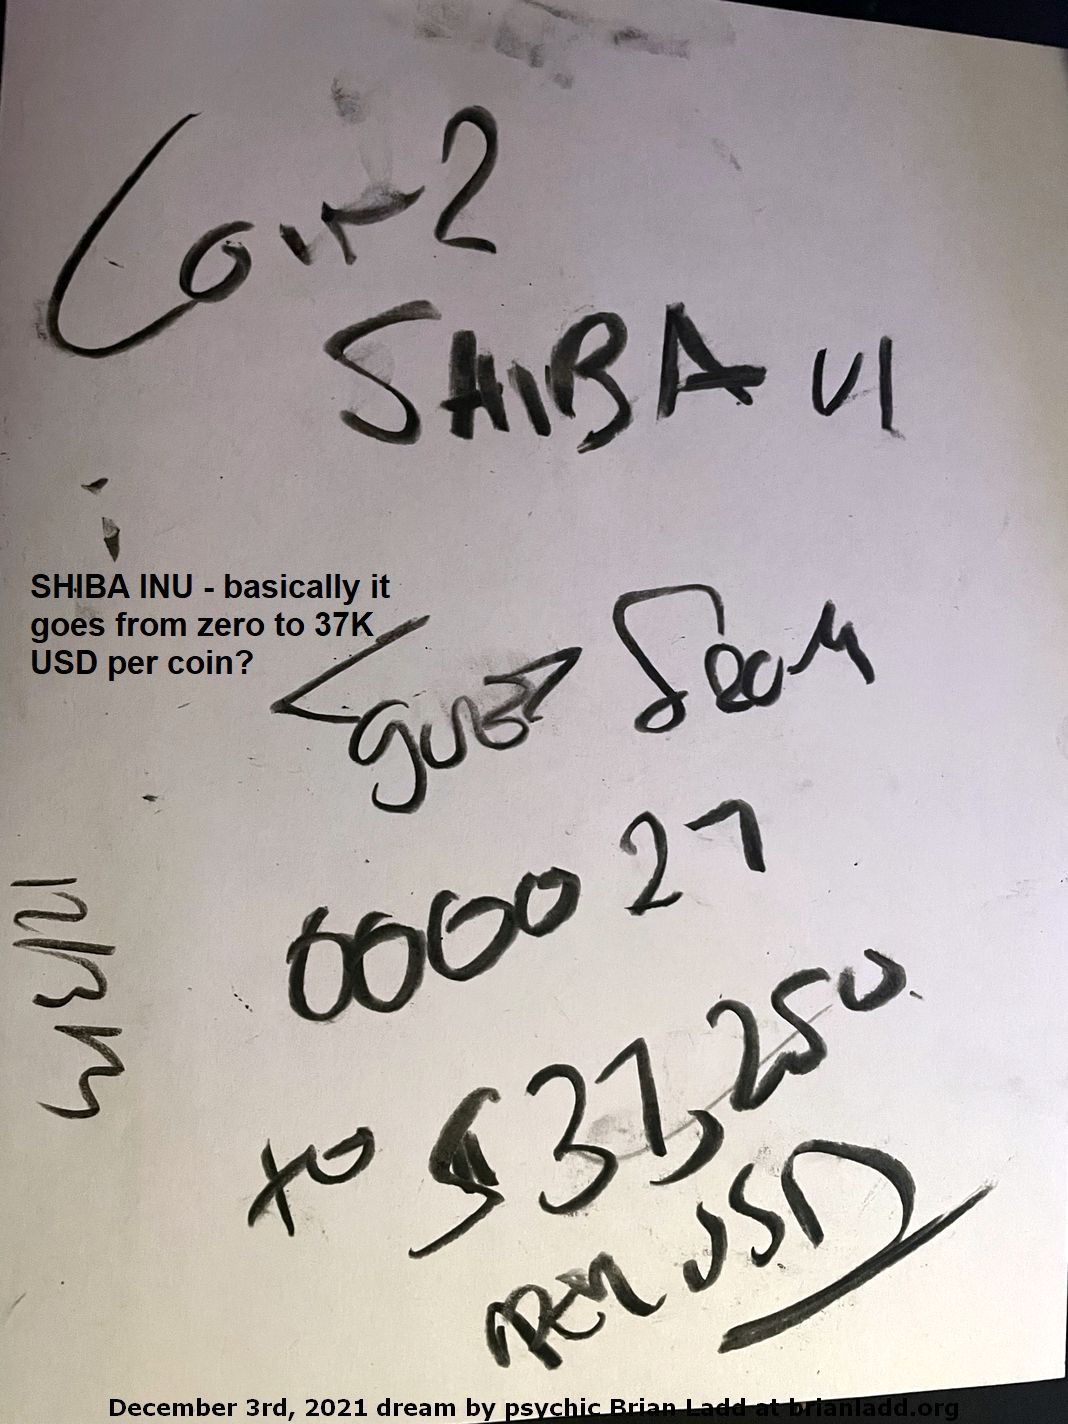 3 Dec 2021 4  SHIBA INU - basically it goes from zero to 37K USD per coin?
SHIBA INU - basically it goes from zero to 37K USD per coin?
